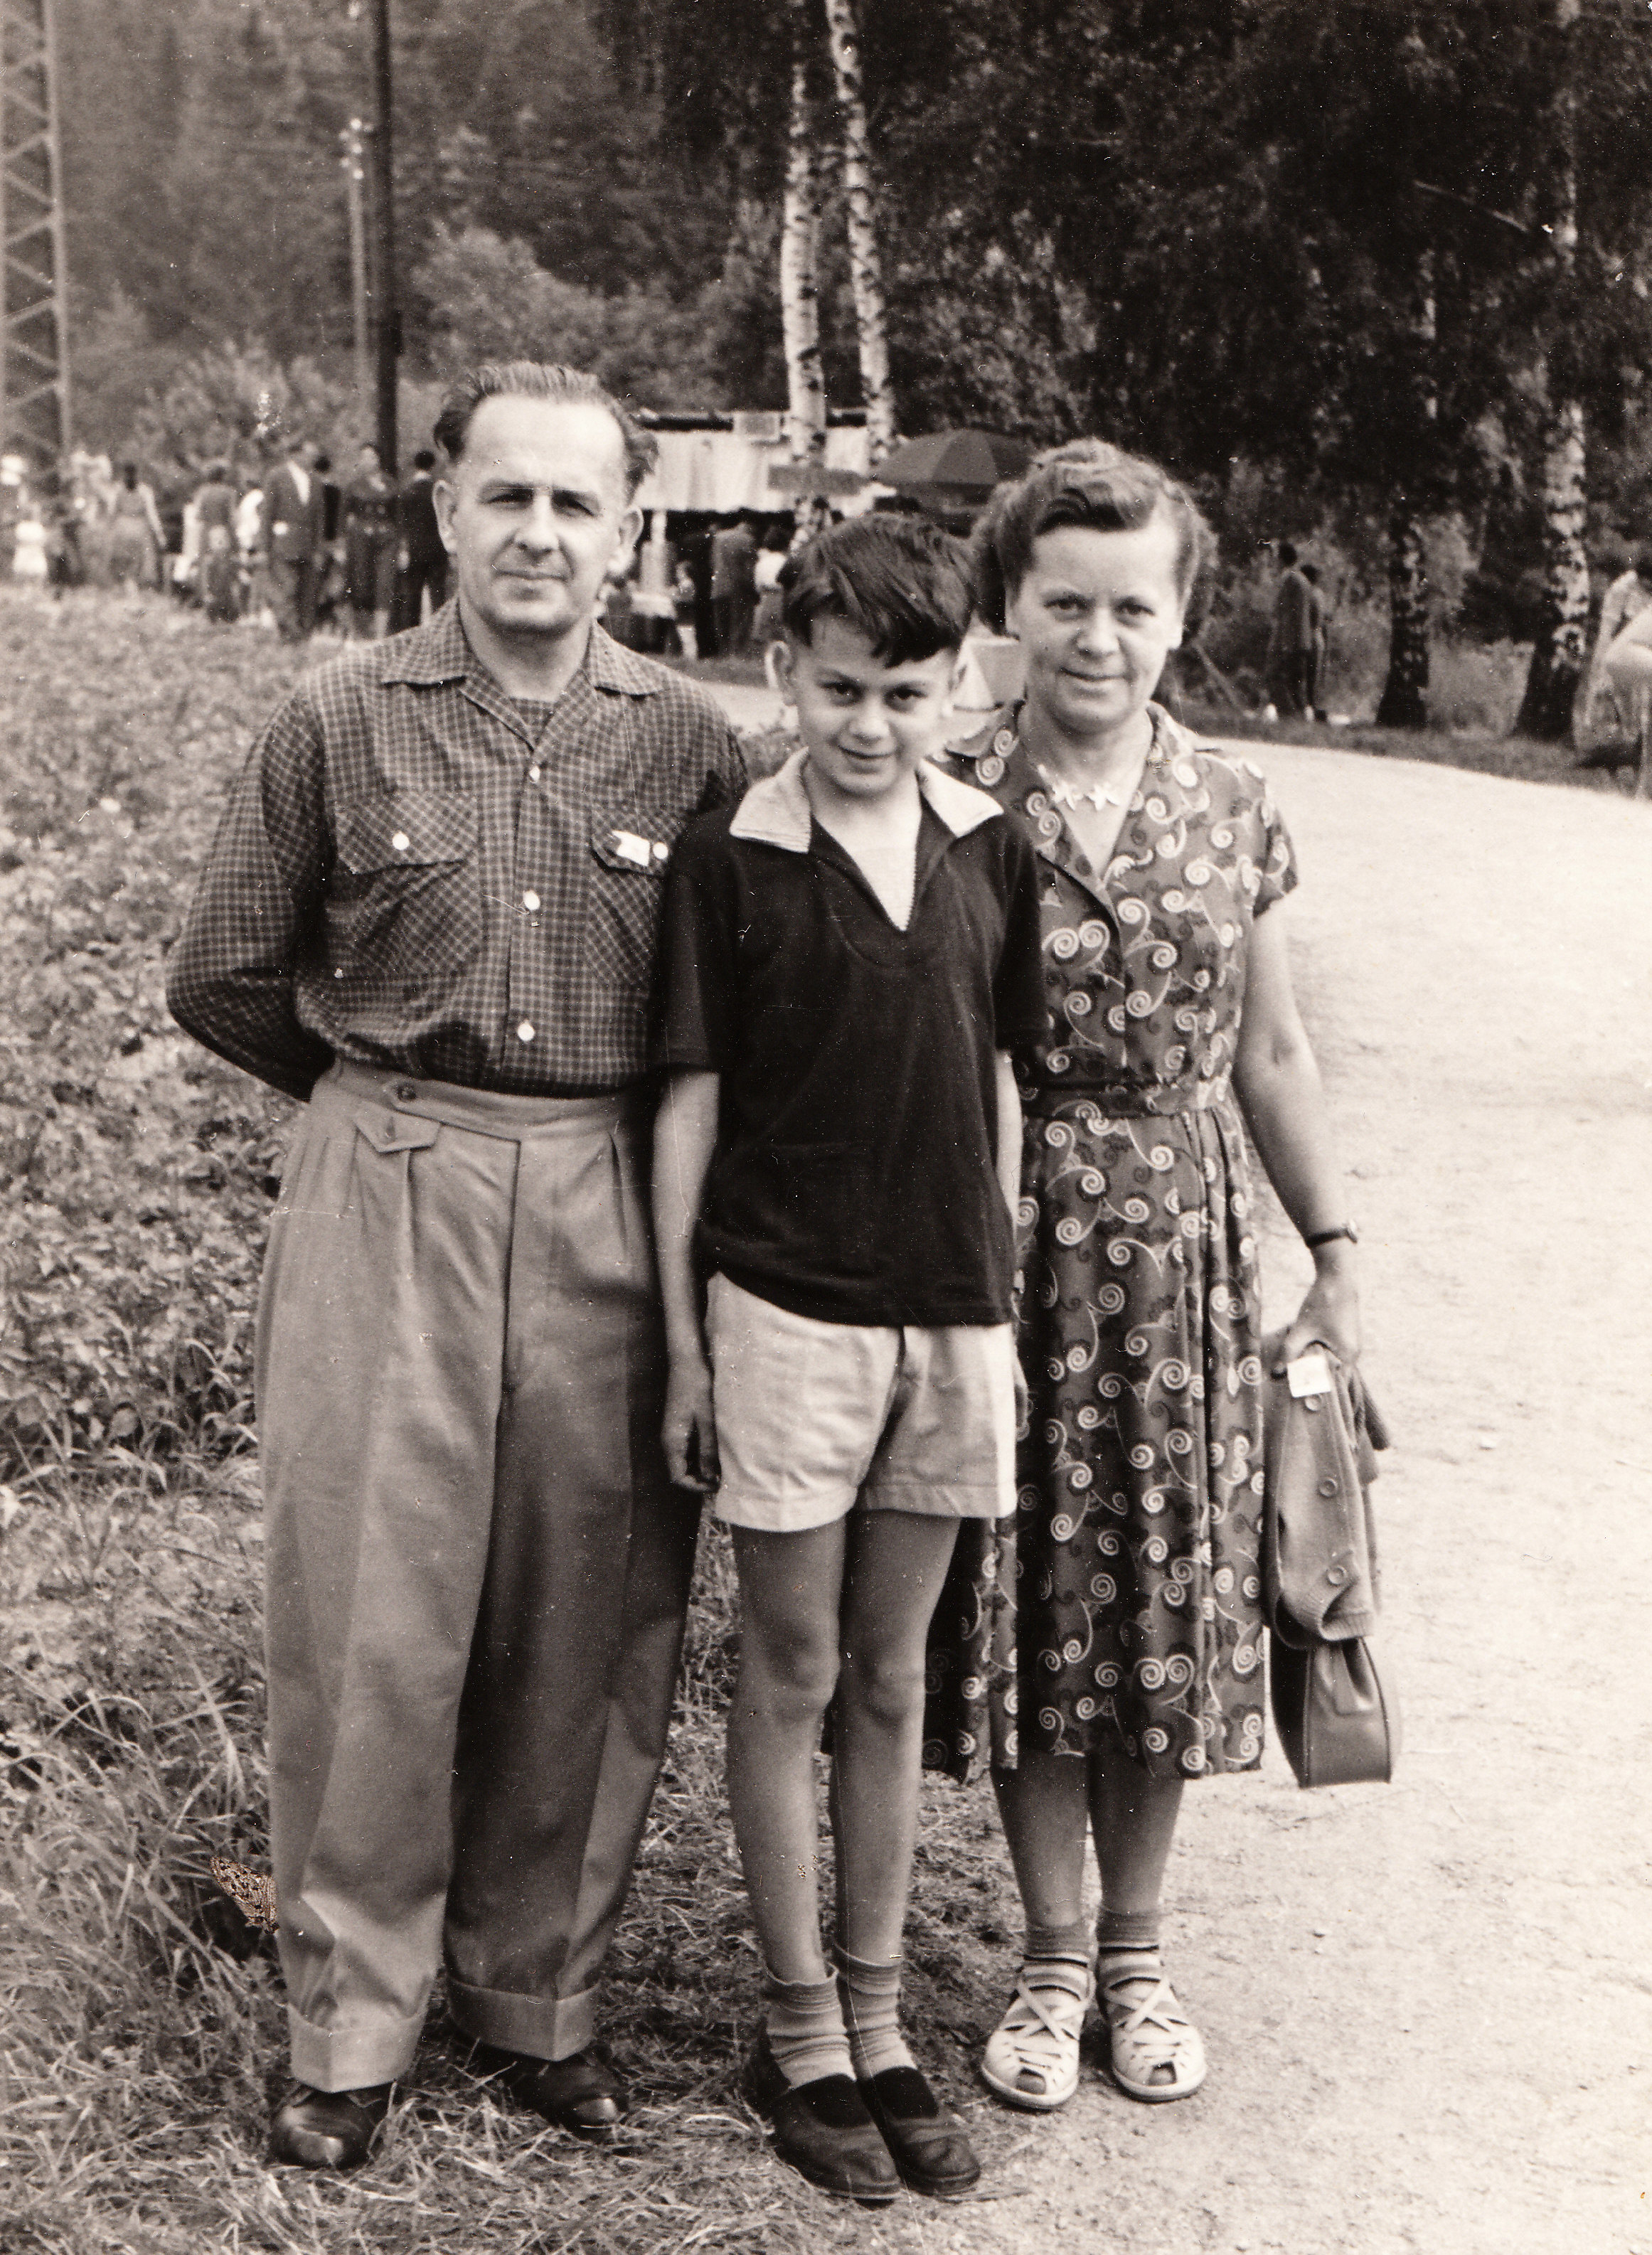 Otokar Simm se svými rodiči Maxem a Emilií na Mírové slavnosti u jablonecké přehrady v roce 1957